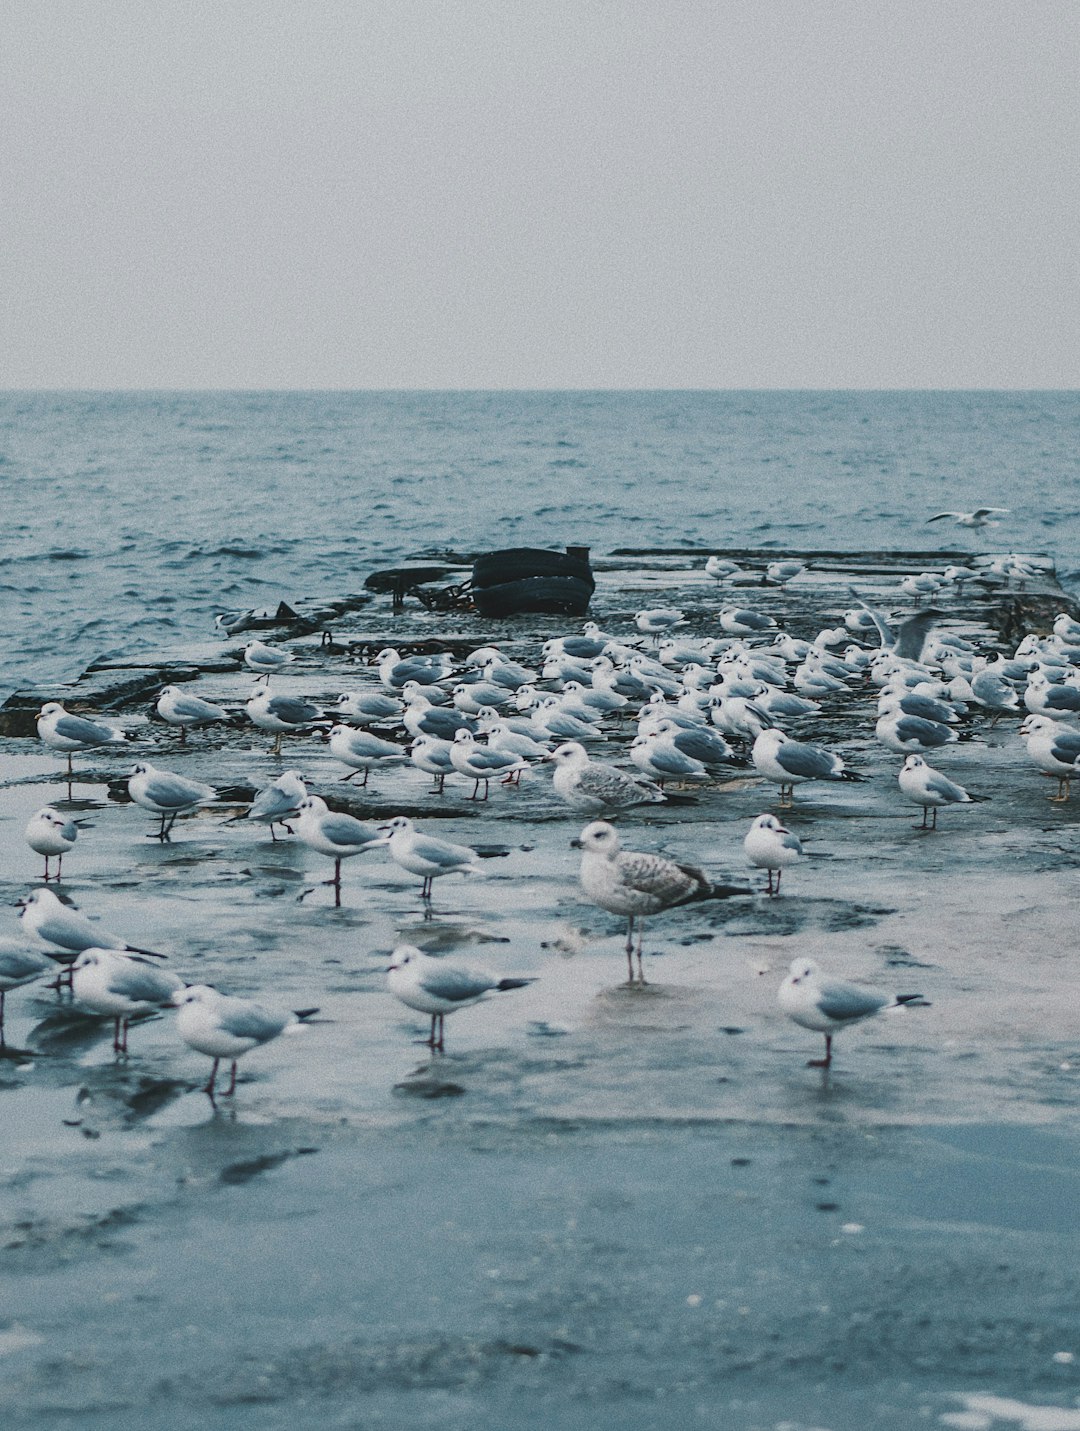 seashore with birds